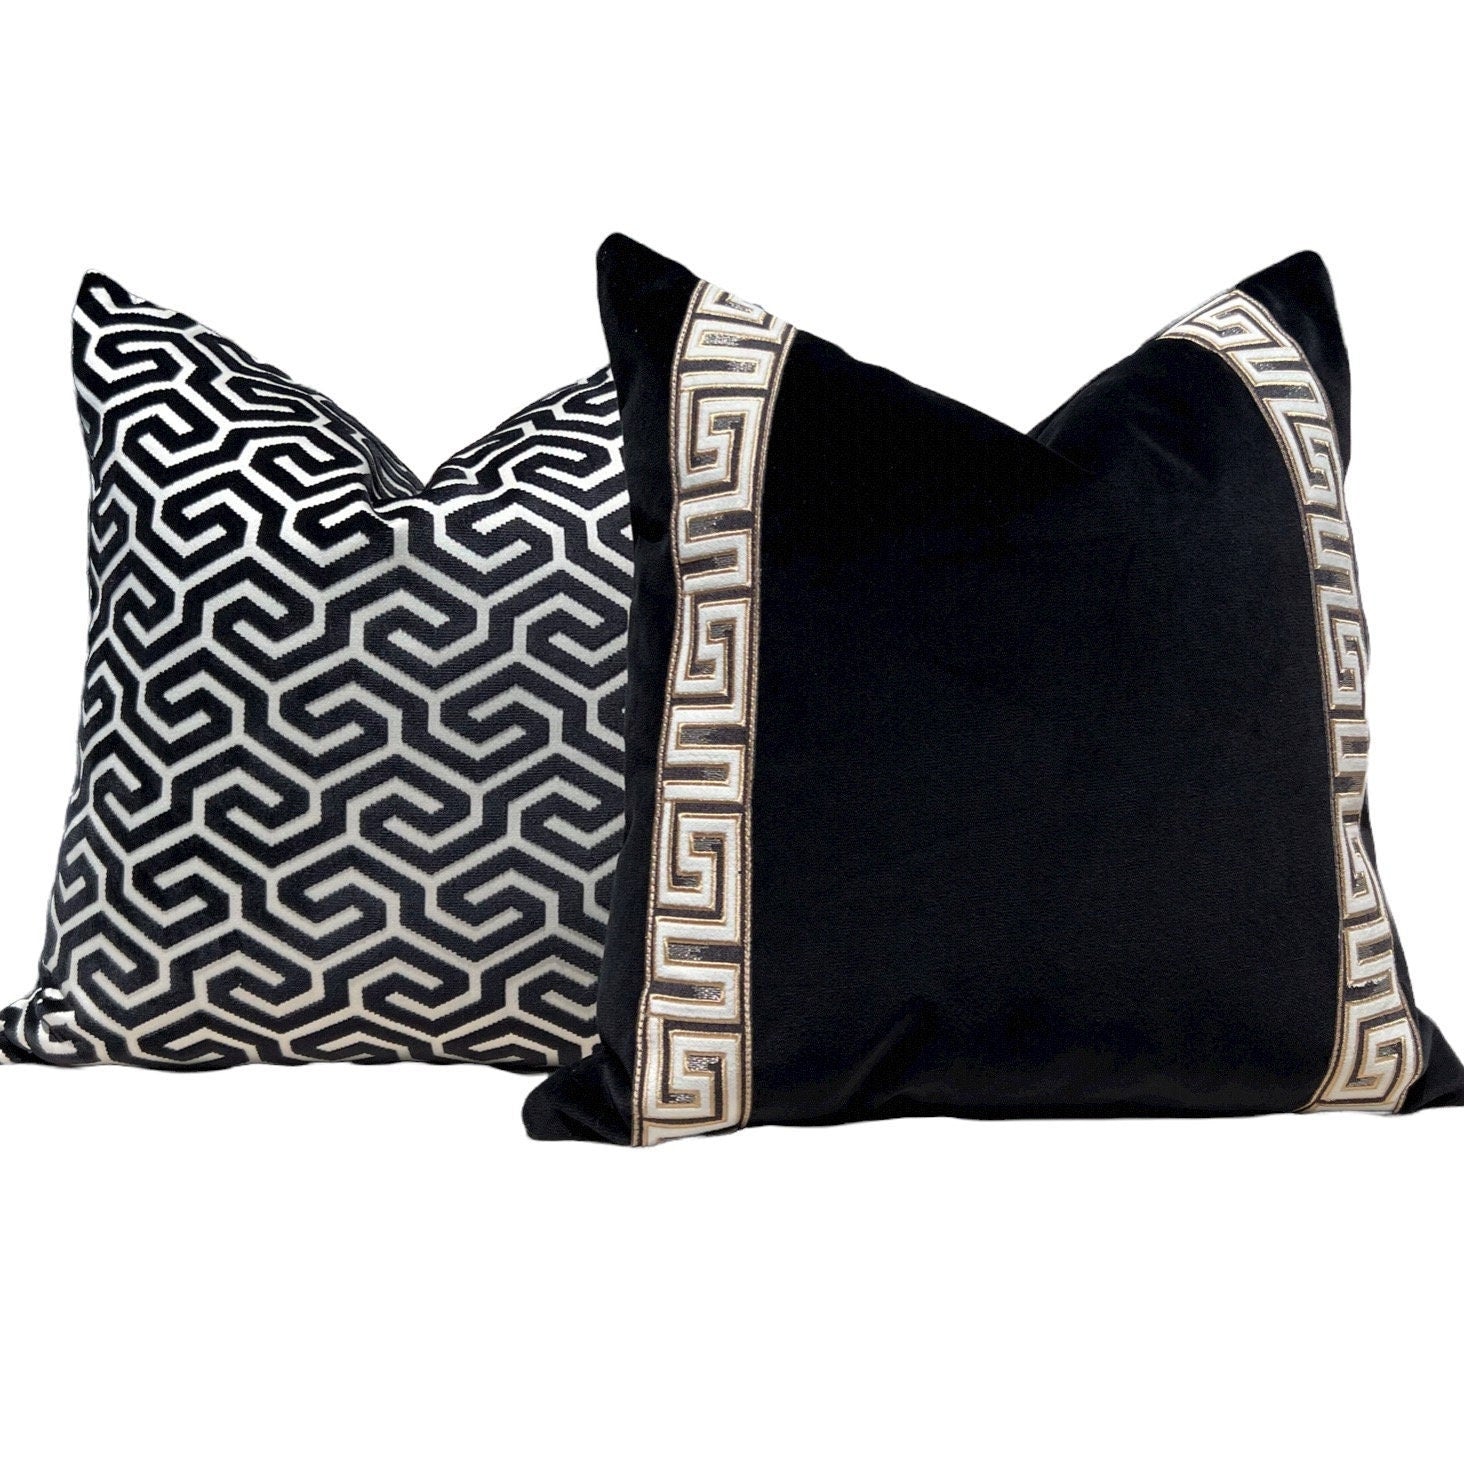 Designer Velvet Pillow in Black, Greek Key Tape. Designer Pillows, High End Pillows, Black Velvet Pillow Cover, Contemporary Pillow